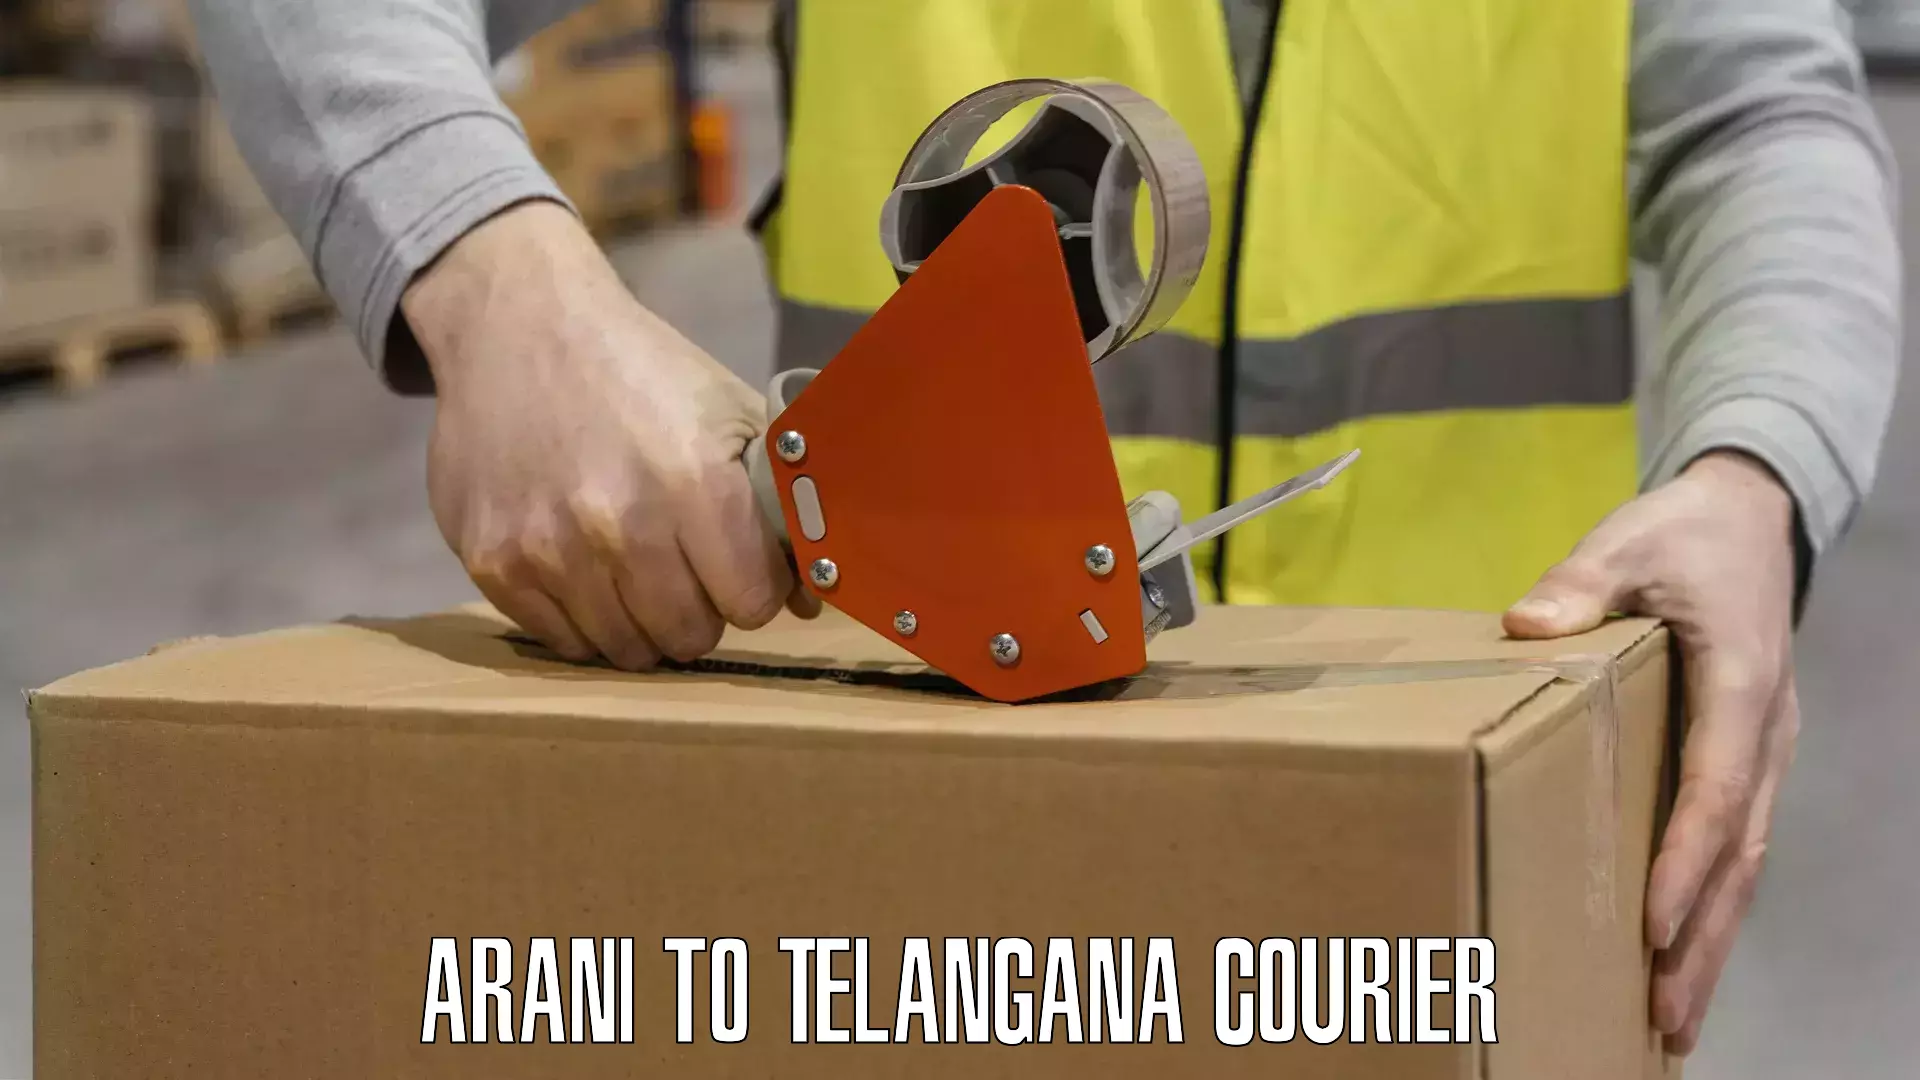 State-of-the-art courier technology Arani to Mudigonda